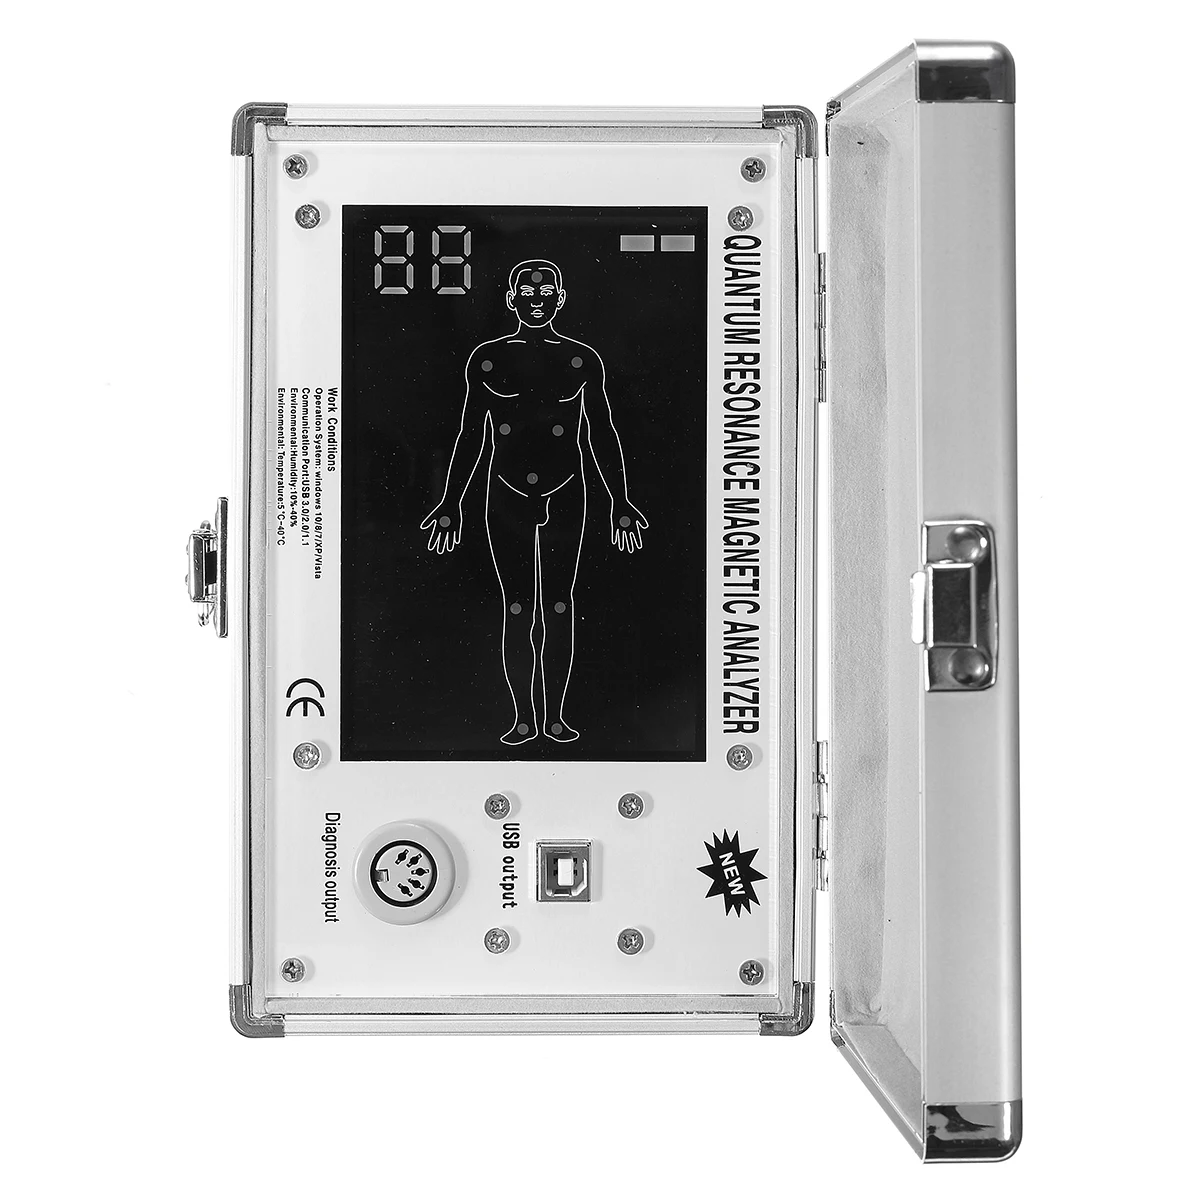 

CE утвержденный квантовый анализатор здоровья 6-го поколения, сканер человеческого тела